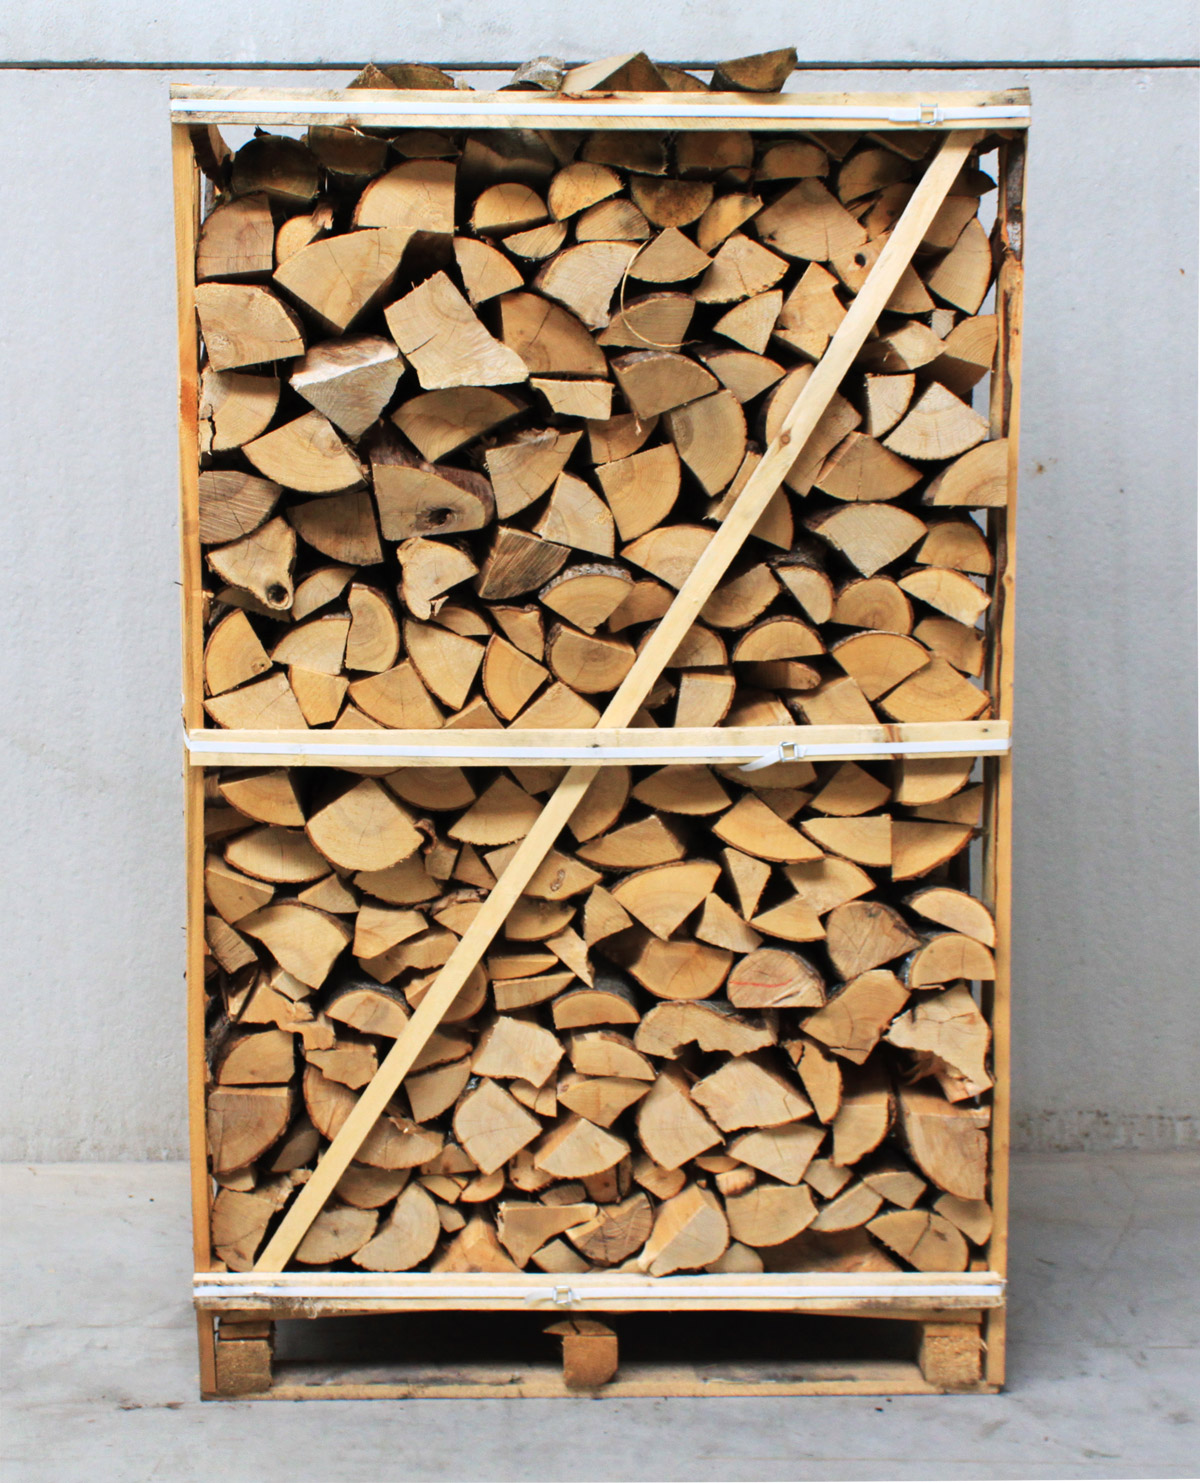 Bûches de bois sec 30cm - Bois de chauffage chêne sec palette